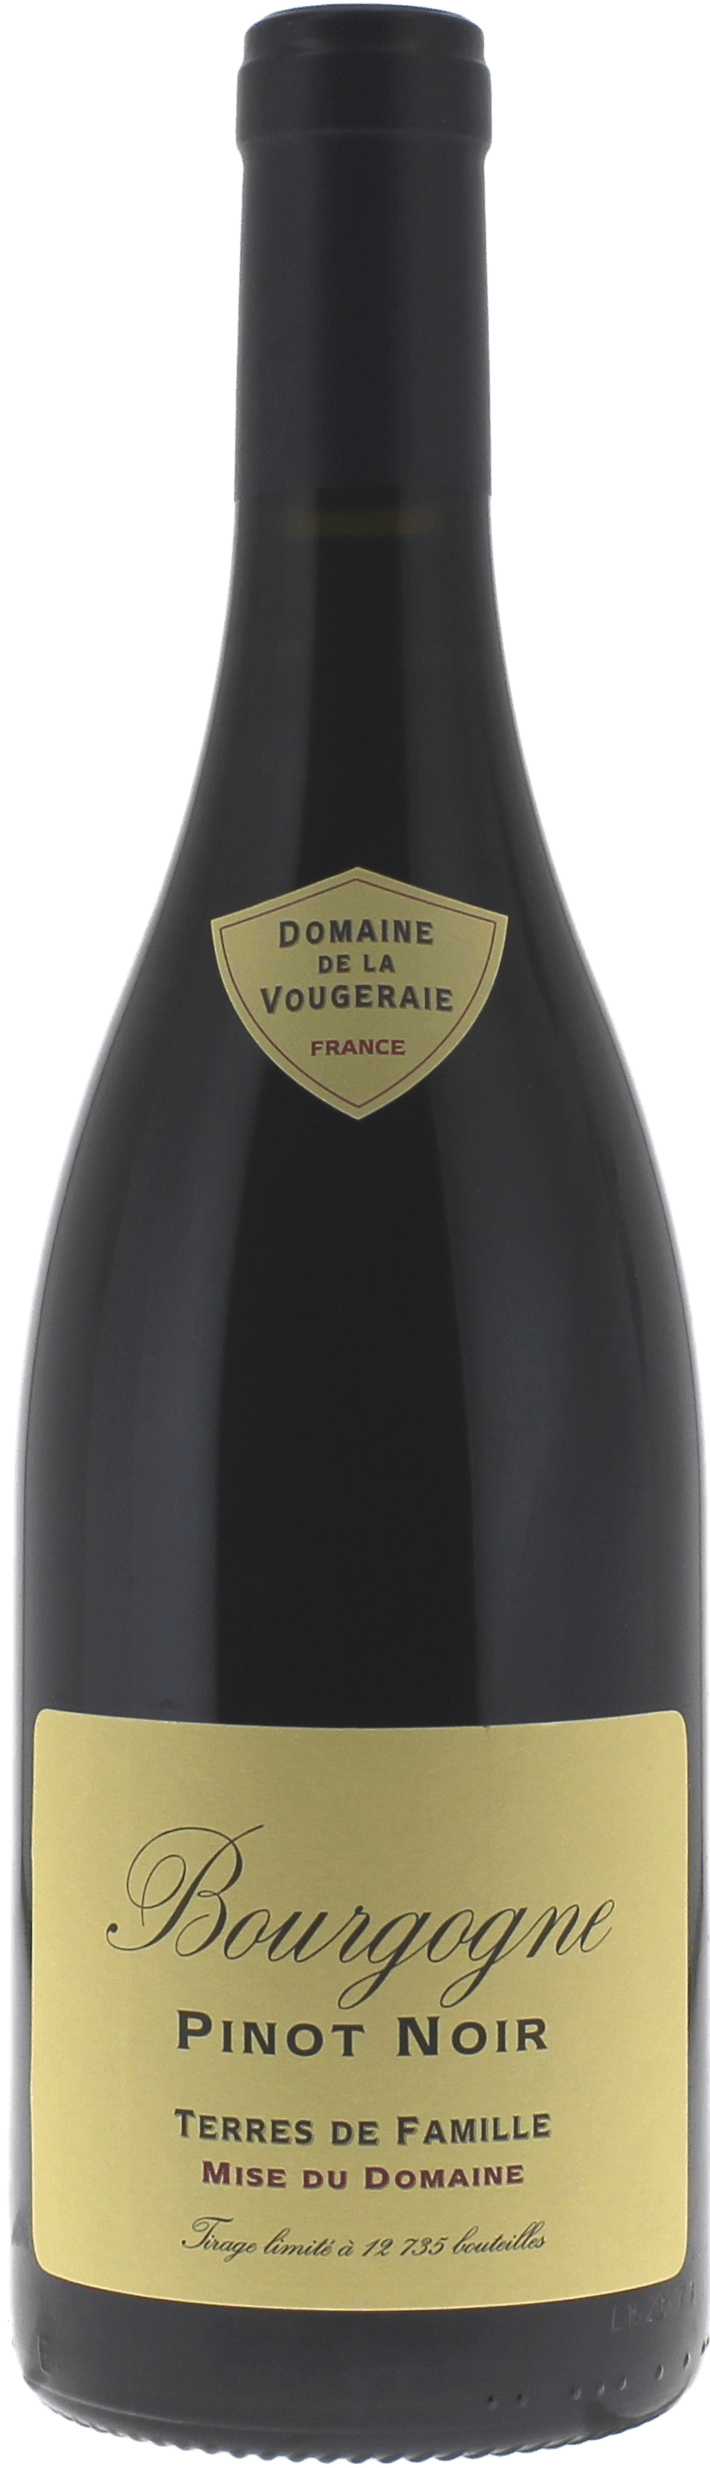 Pinot noir terres de famille 2018 Domaine VOUGERAIE, Bourgogne rouge